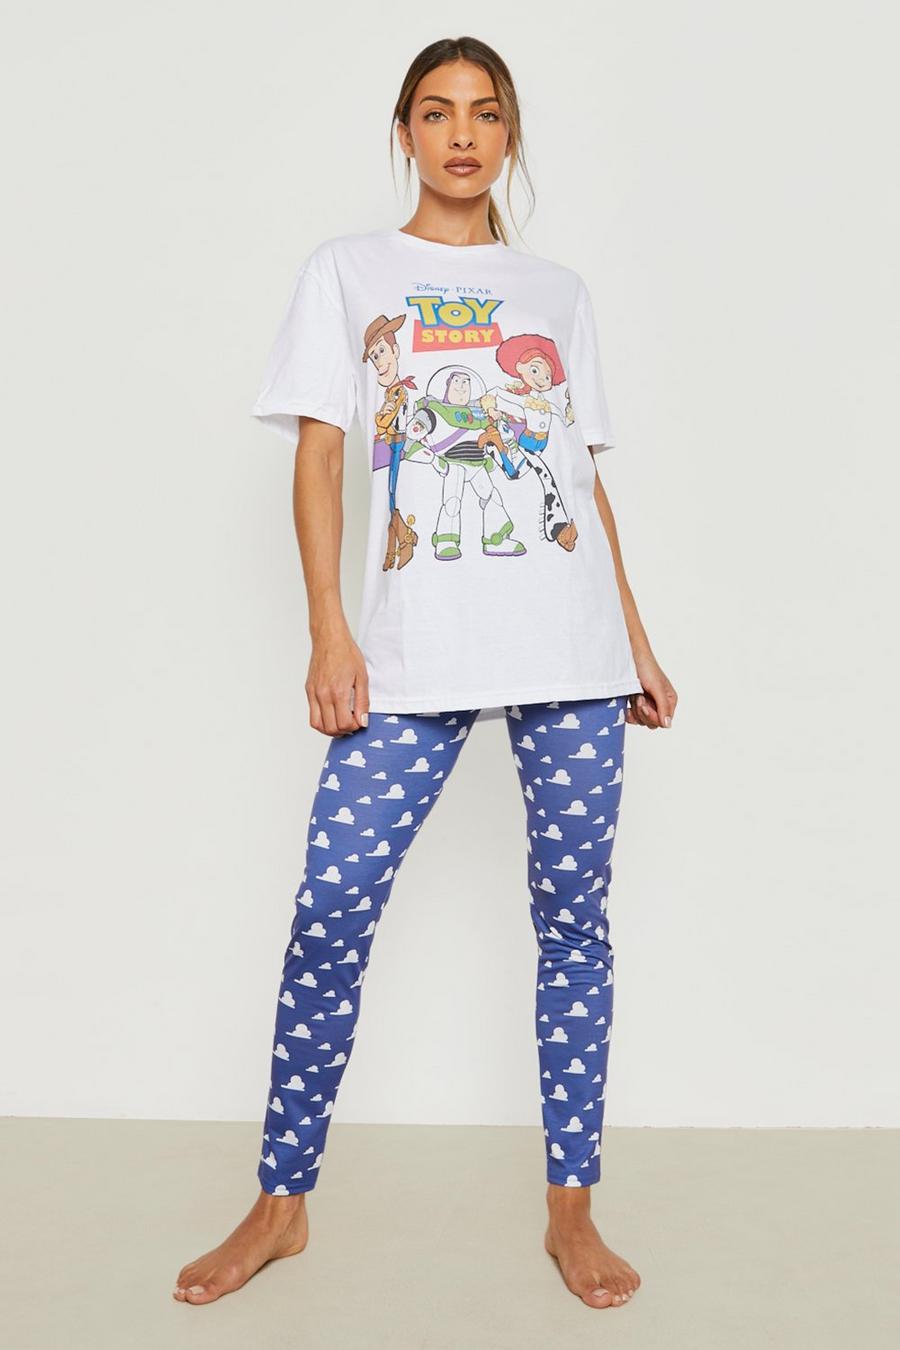 Pijama de Disney con leggings y estampado de Toy Story, Navy azul marino